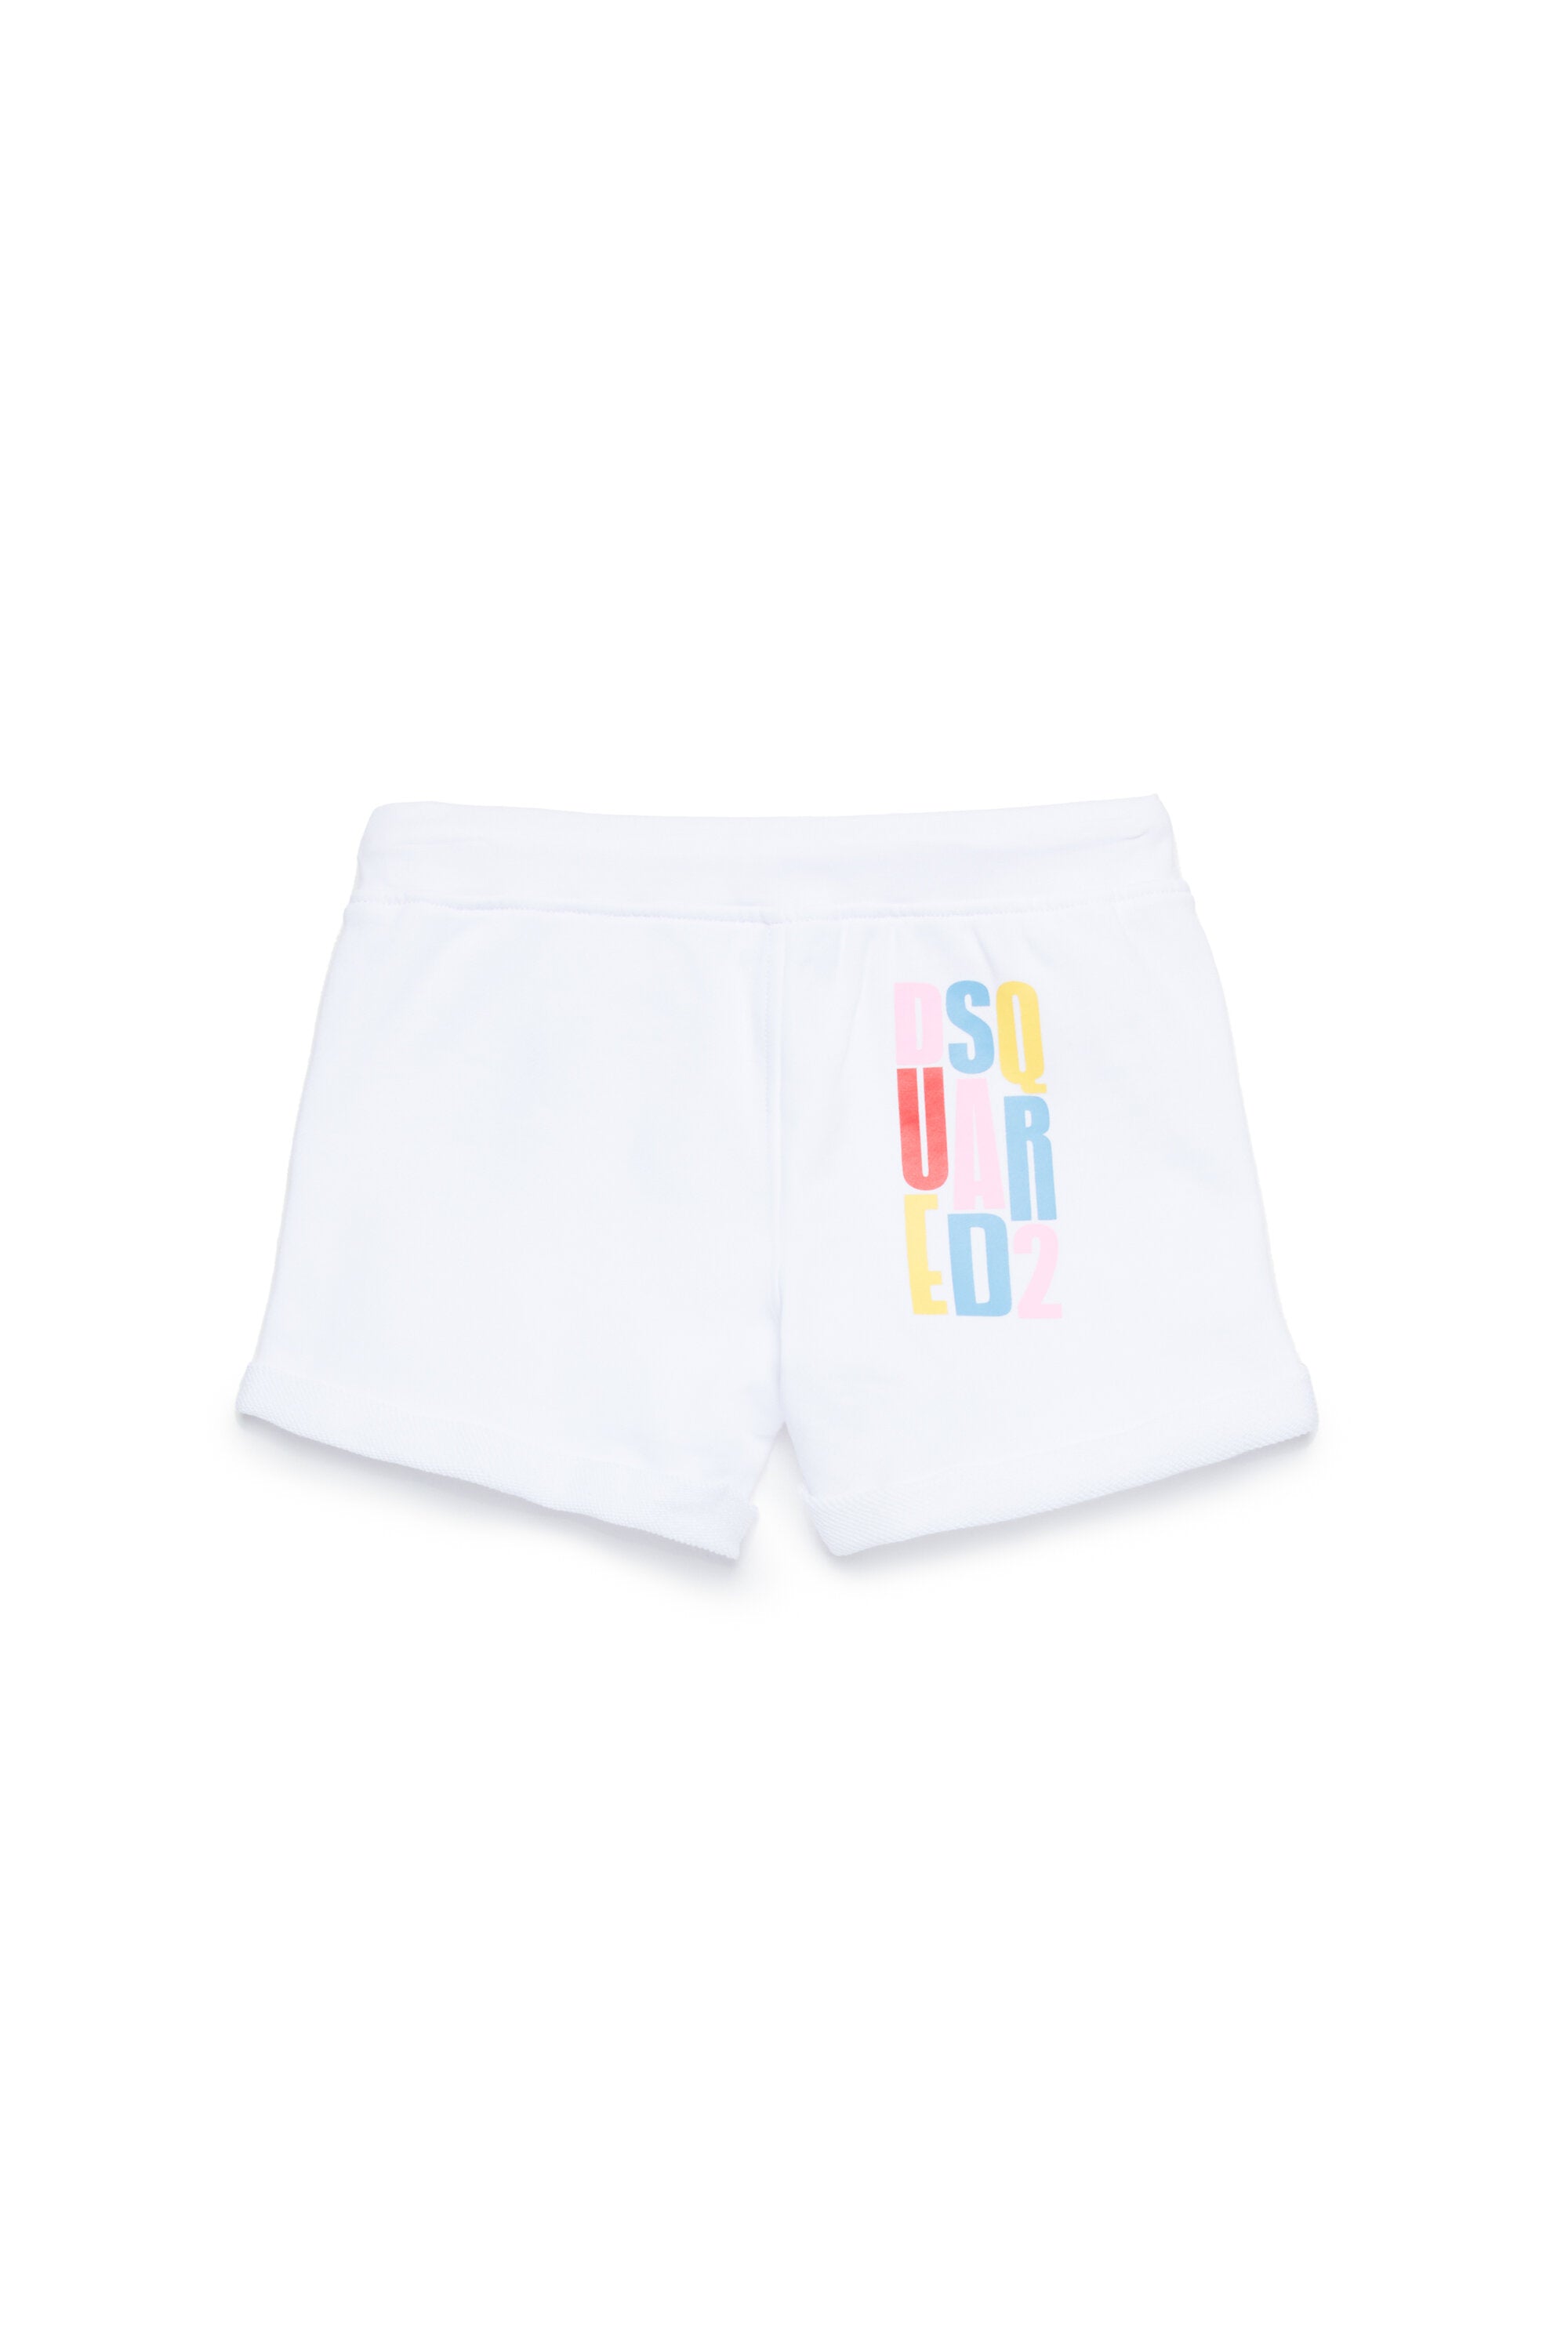 Pantalones cortos en chándal multicolor con marca